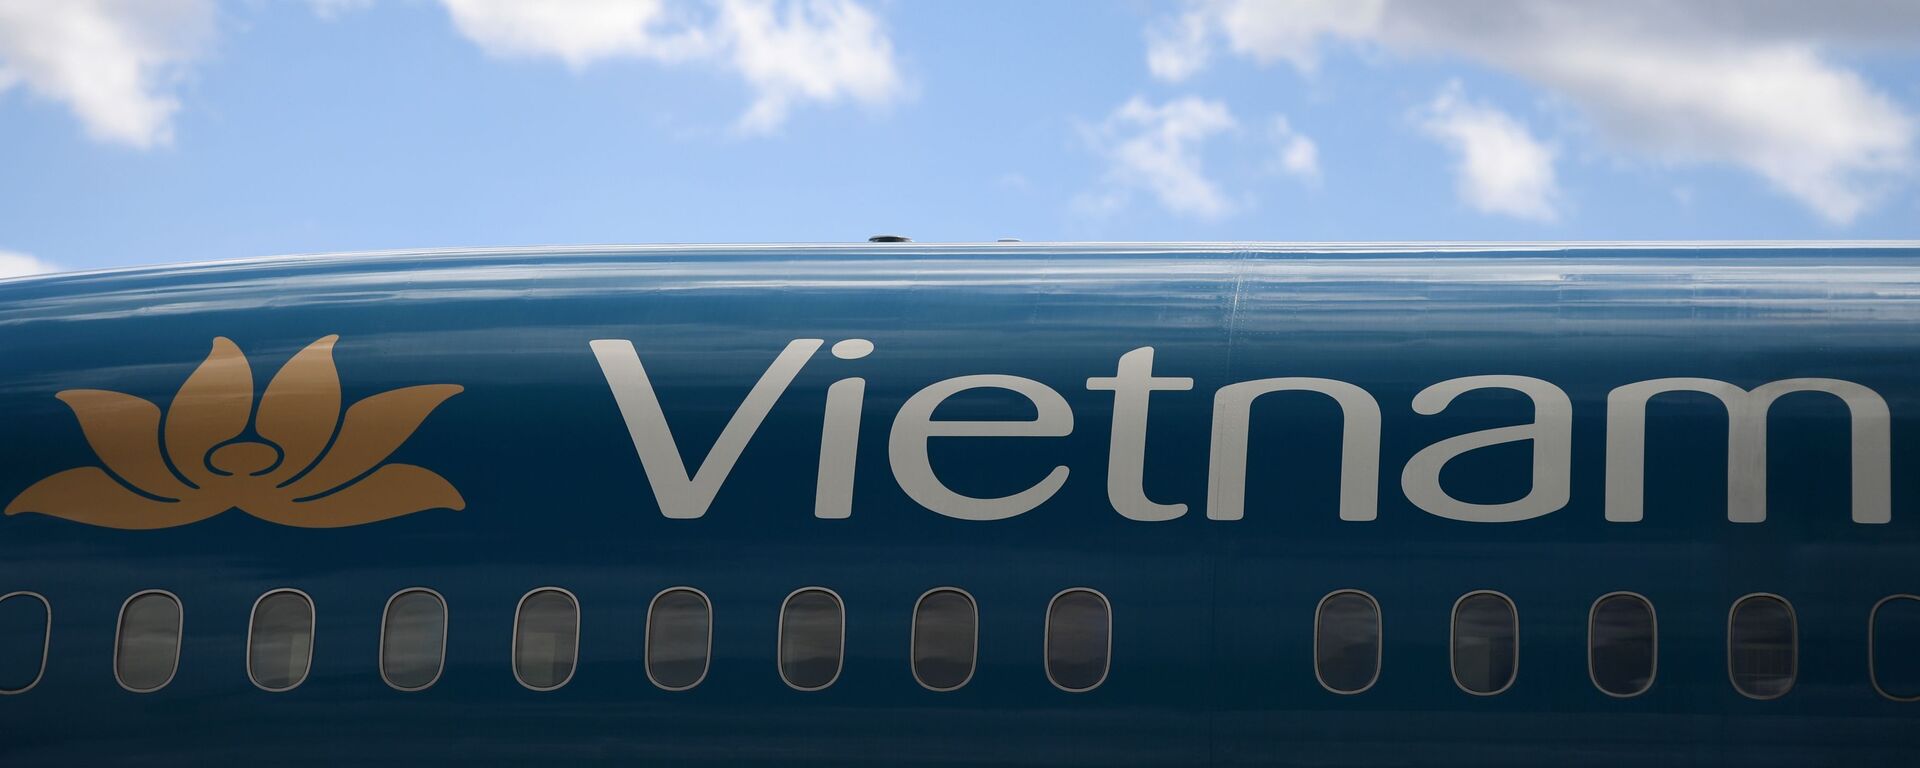 Máy bay của hãng Vietnam Airlines tại sân bay quốc tế “Sheremetyevo” - Sputnik Việt Nam, 1920, 04.03.2022